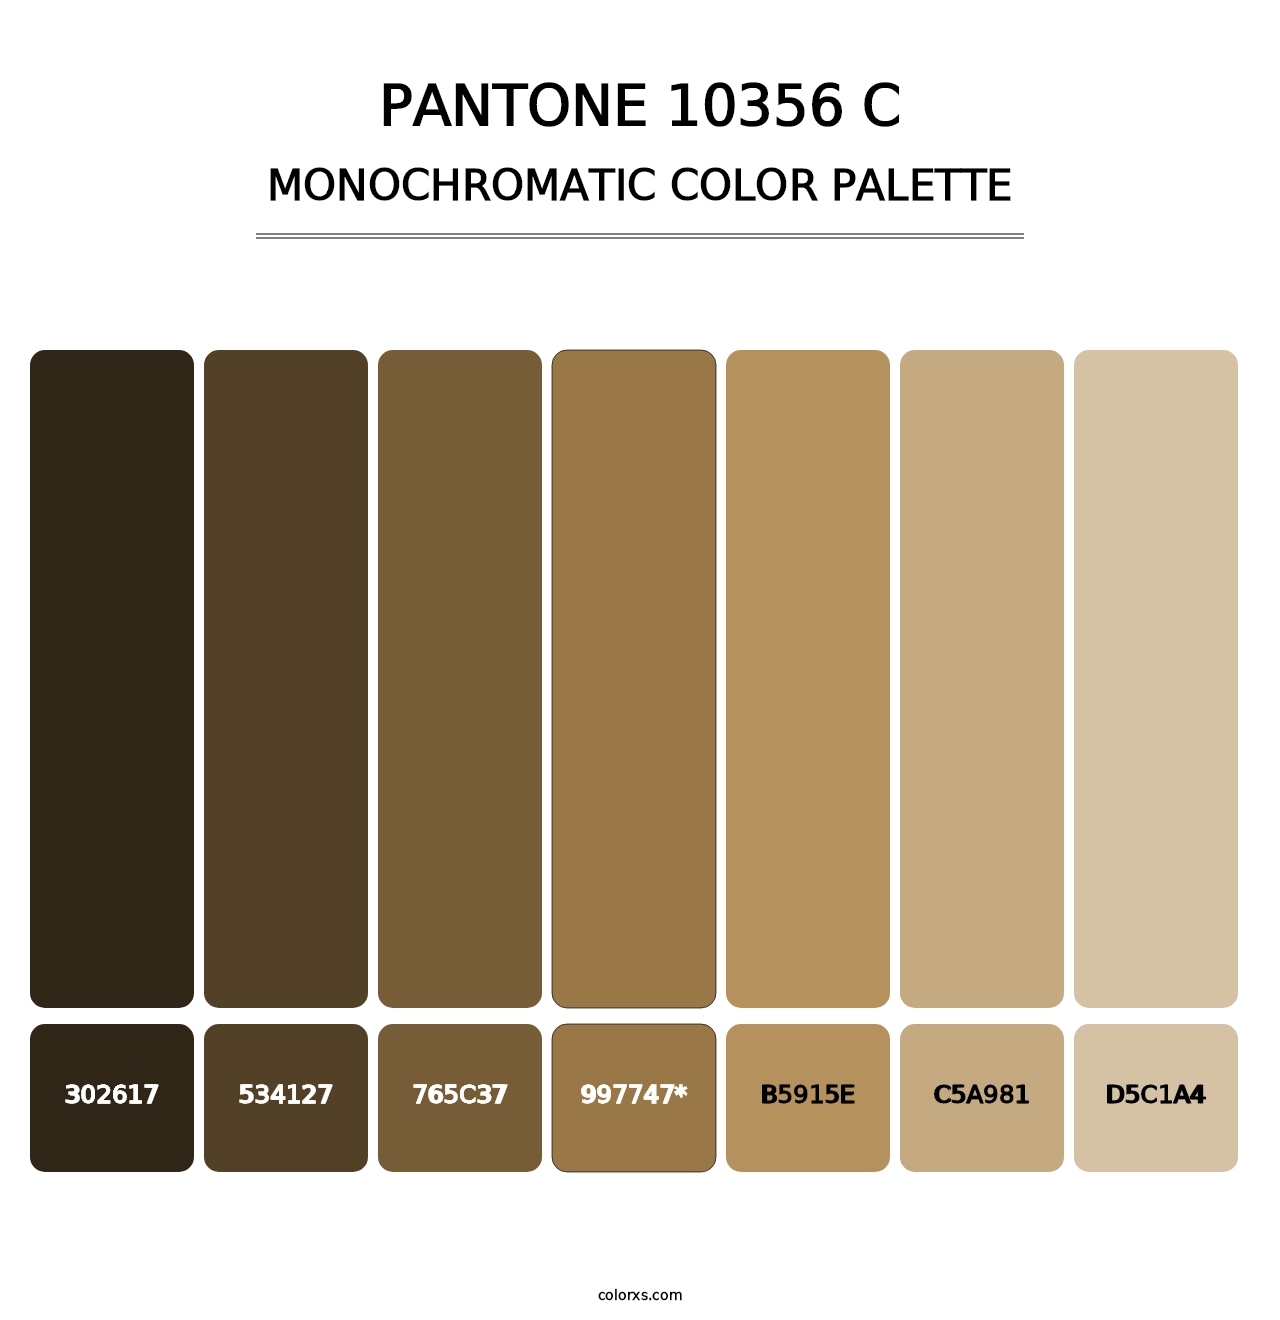 PANTONE 10356 C - Monochromatic Color Palette